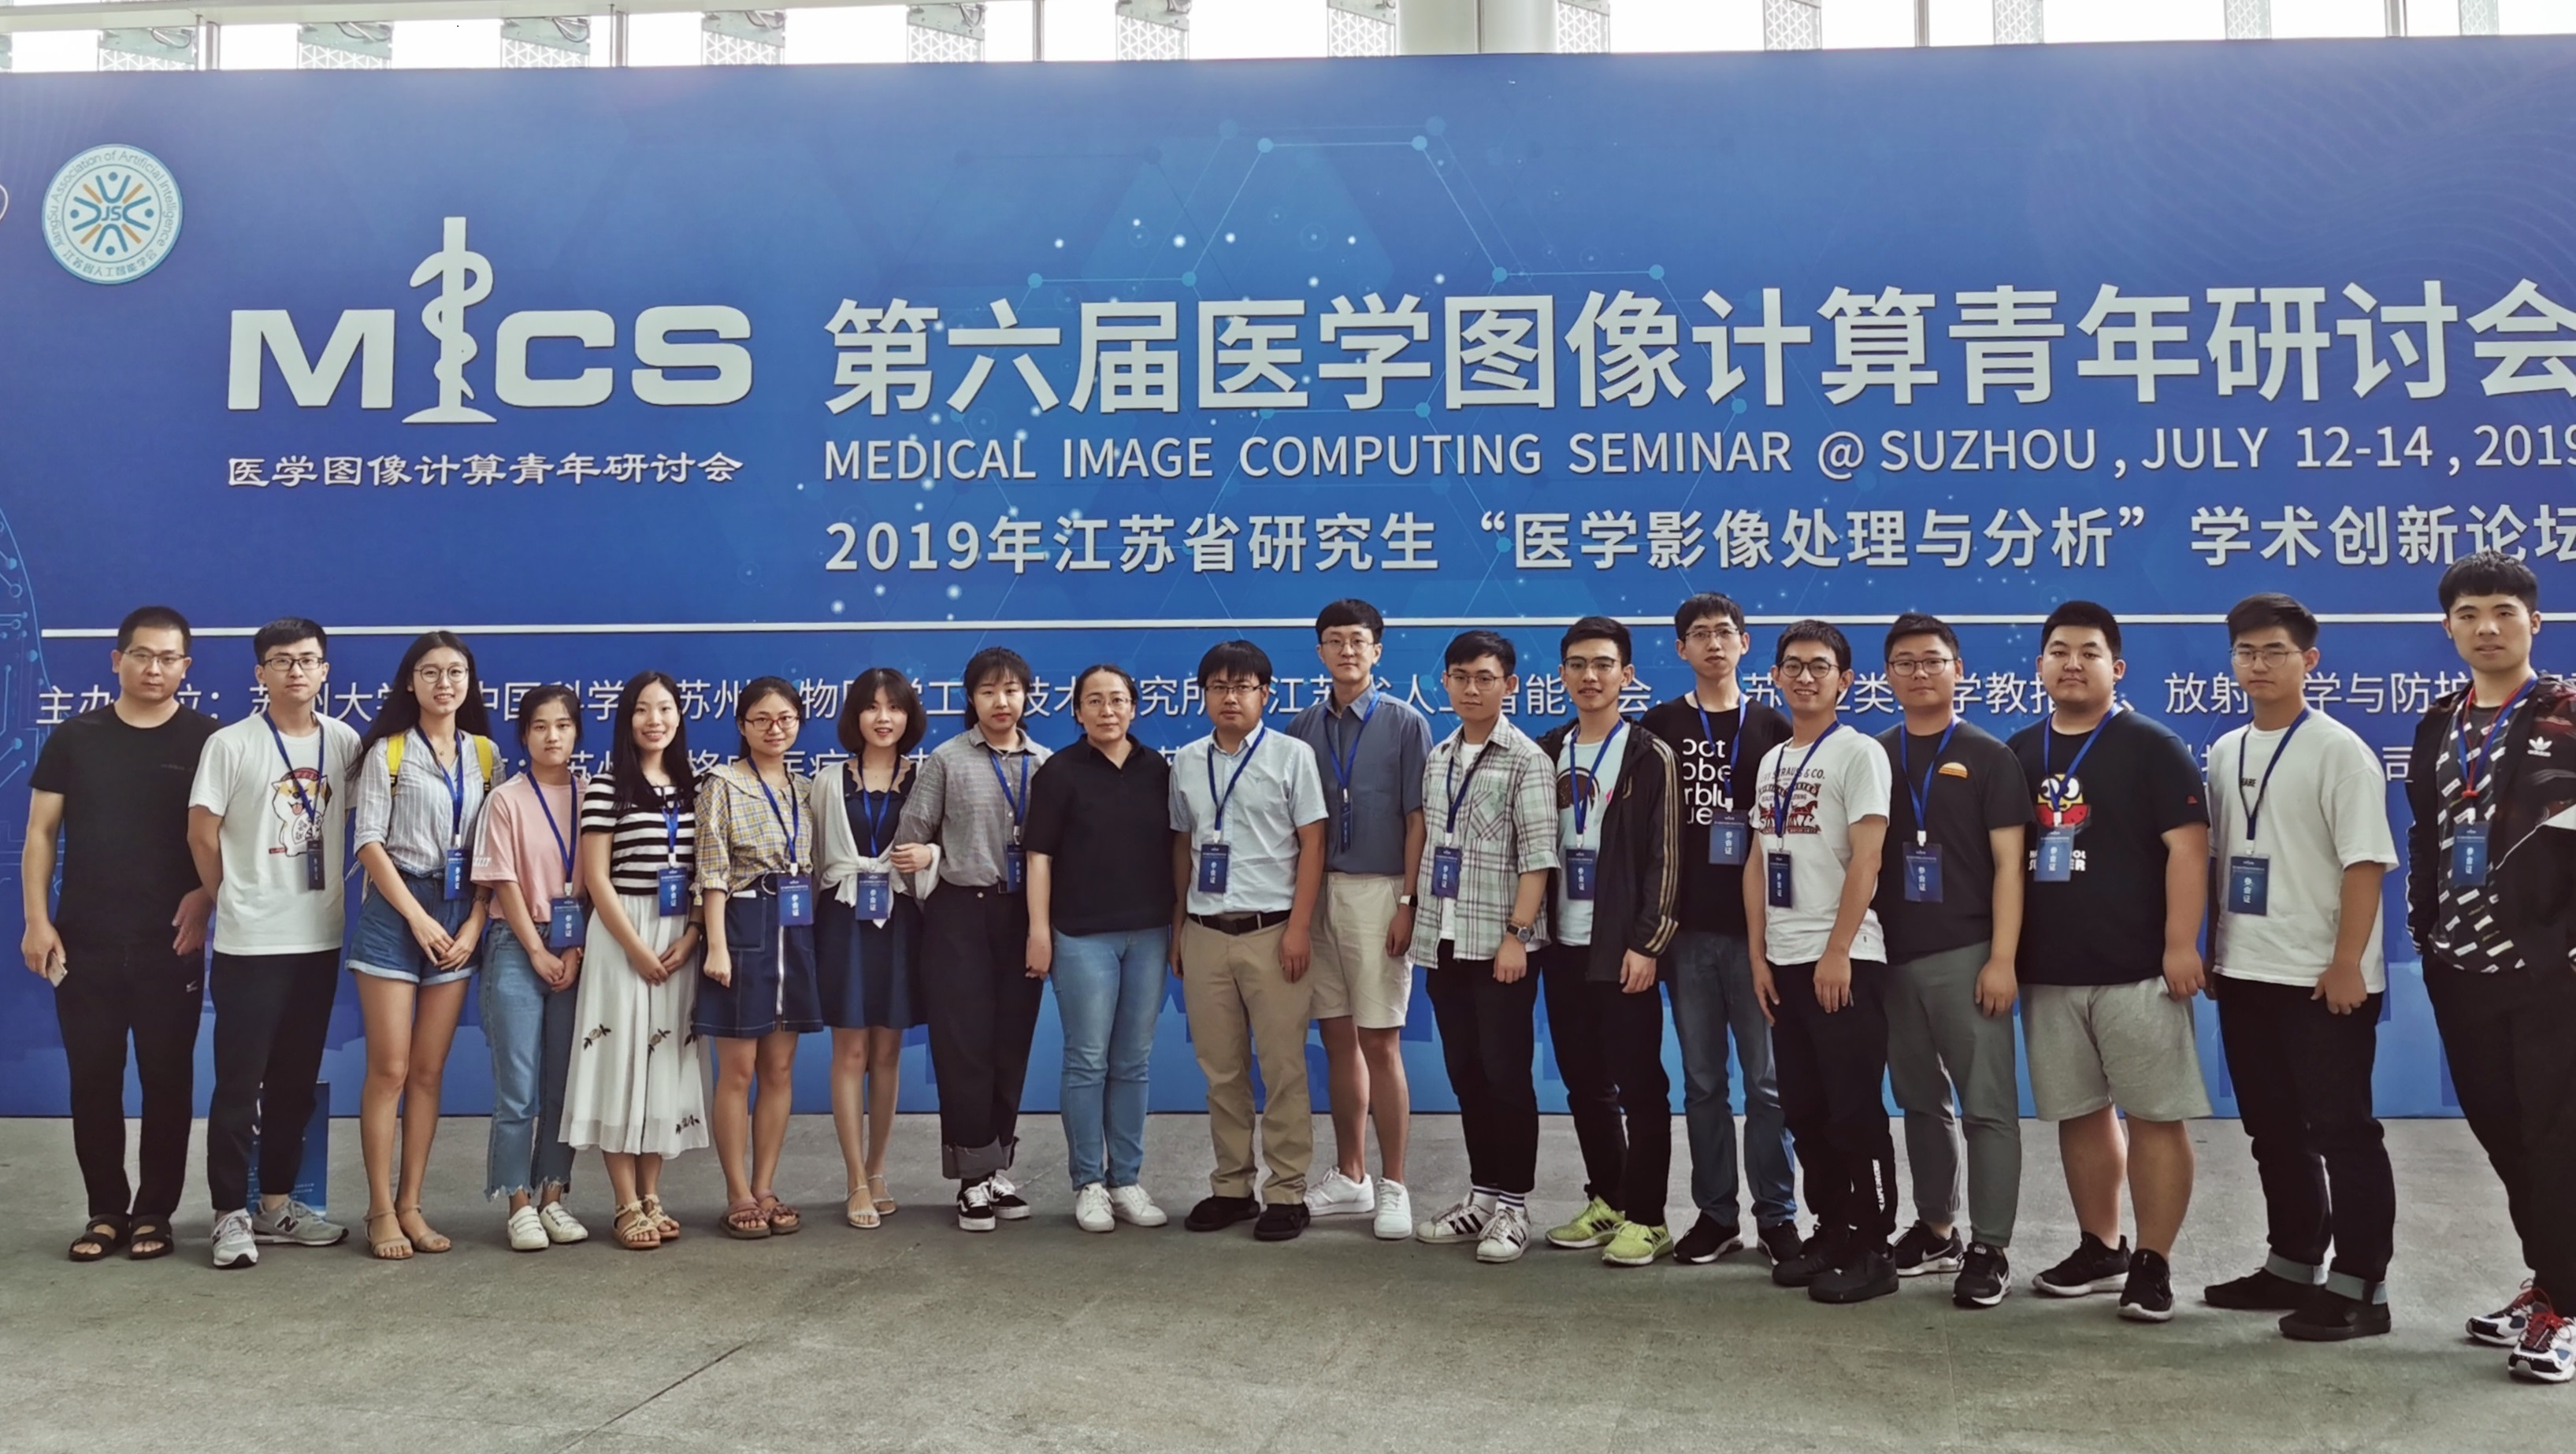 实验室师生参加第六届医学图像计算青年研讨会(MICS 2019)